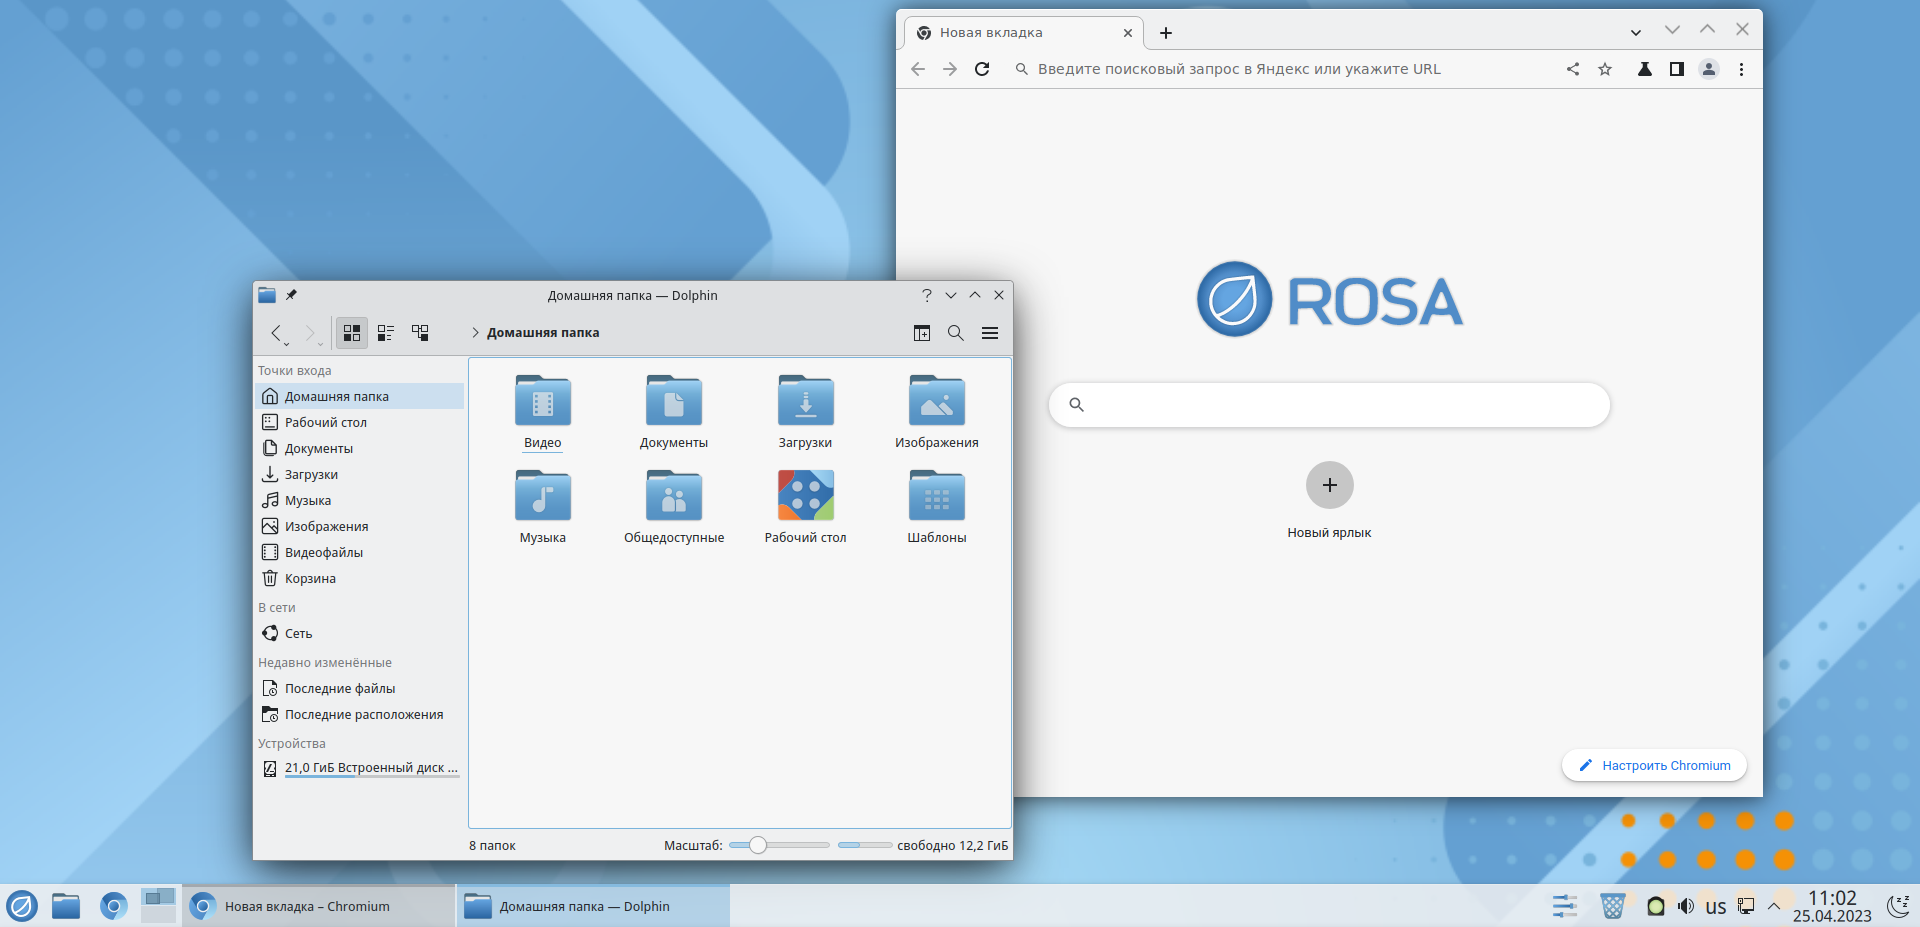 НТЦ ИТ РОСА выпустила обновленную версию своей операционной системы РОСА «ХРОМ» 12.4